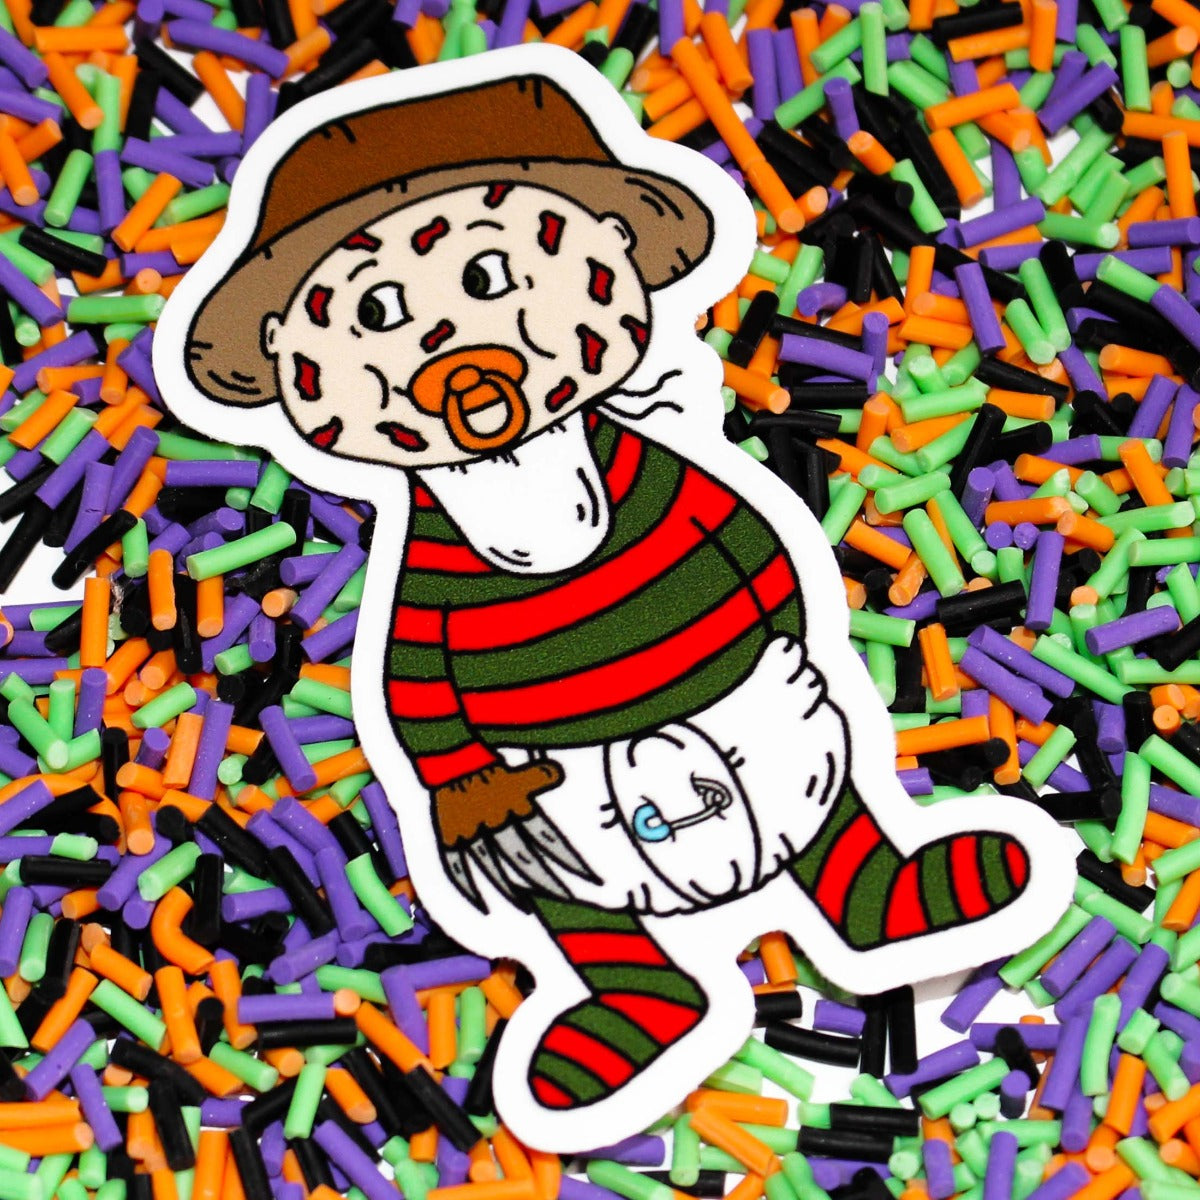 Baby Freddy Krueger Sticker by SpookyKillerBabies.com